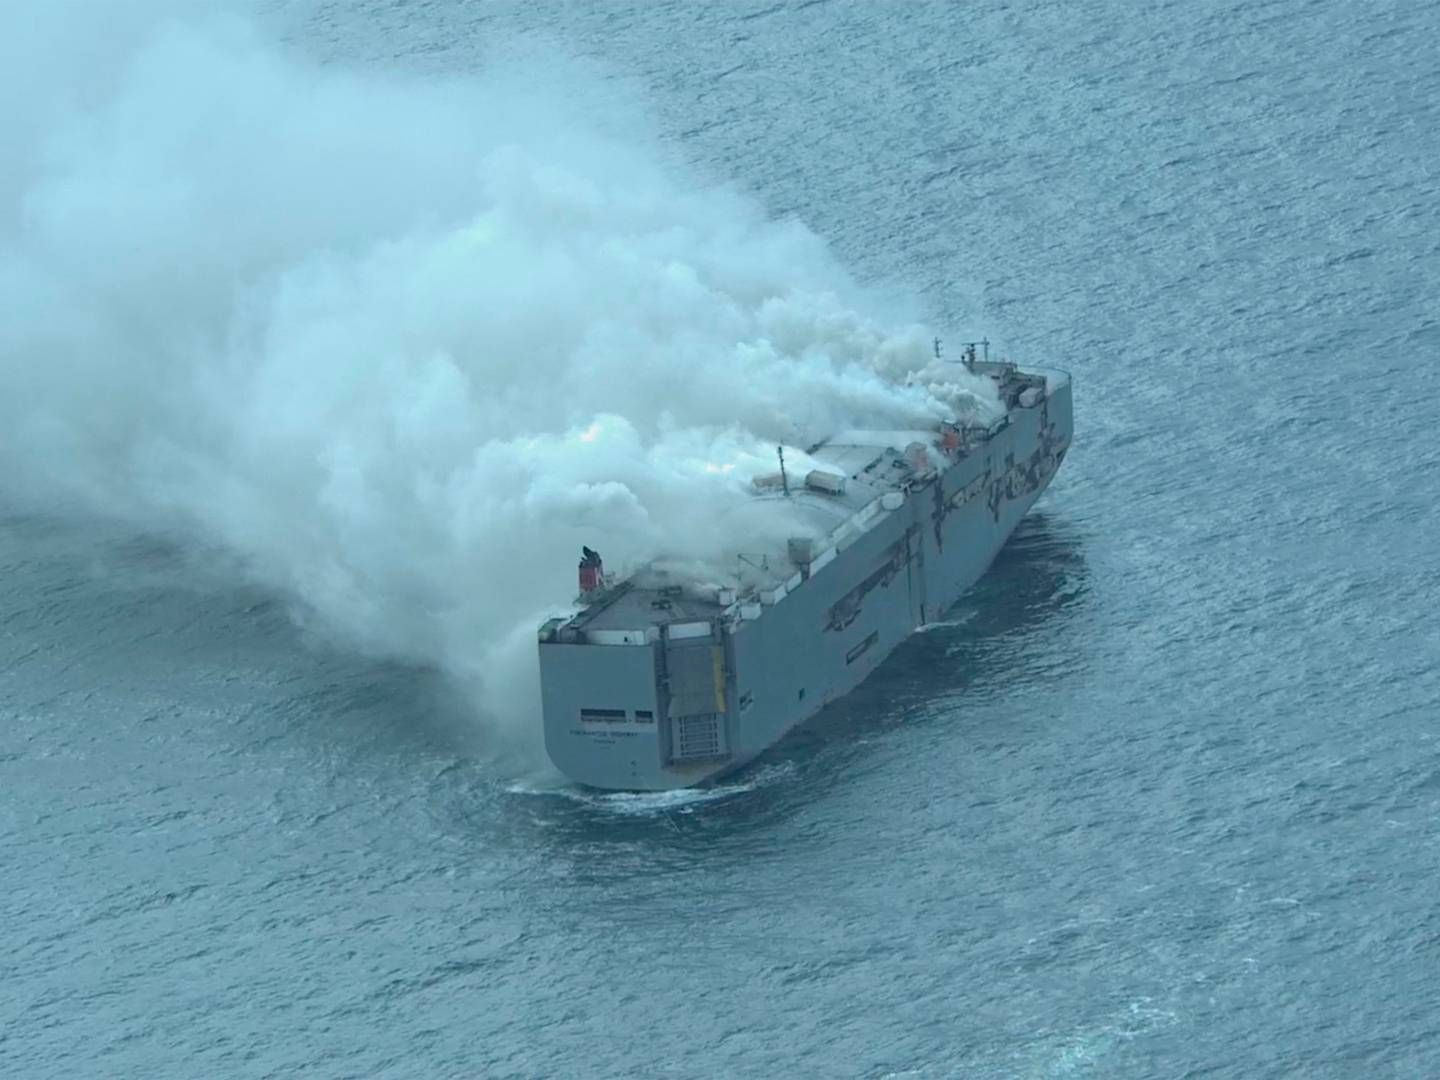 Skibet "Fremantle Highway" brød i brand tidligt onsdag morgen. Det er endnu ikke lykkedes at slukke branden. | Foto: Handout